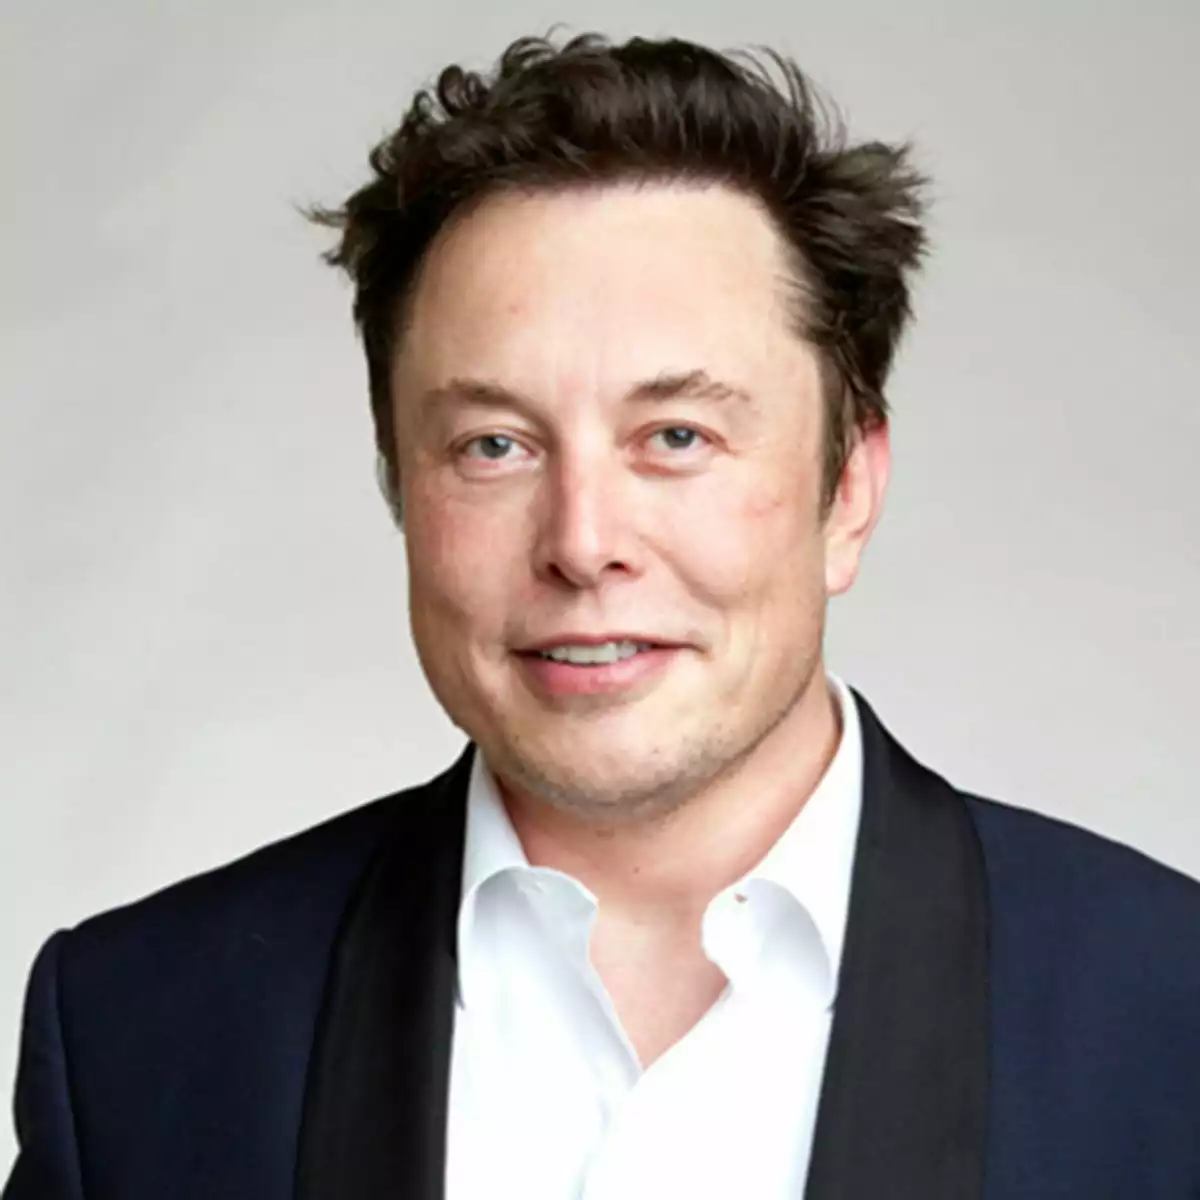 La fortune personnelle d'Elon Musk fond comme neige au soleil